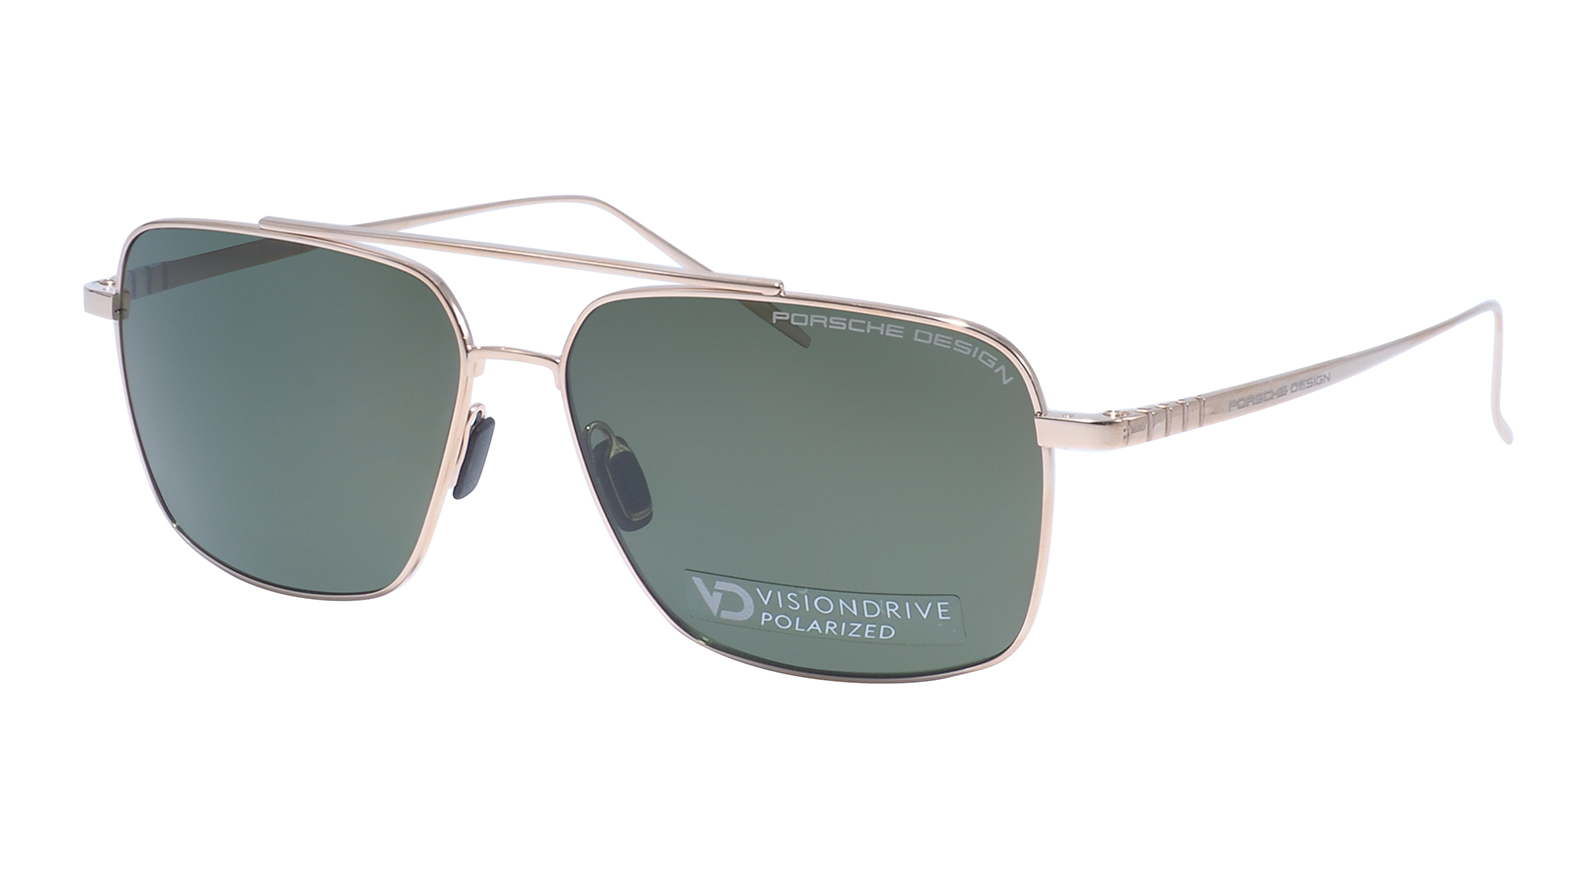 Porsche Design 8679 B мужские поляризованные солнцезащитные очки солнцезащитные очки для рыбалки поляризованные очки с защитой от ультрафиолета